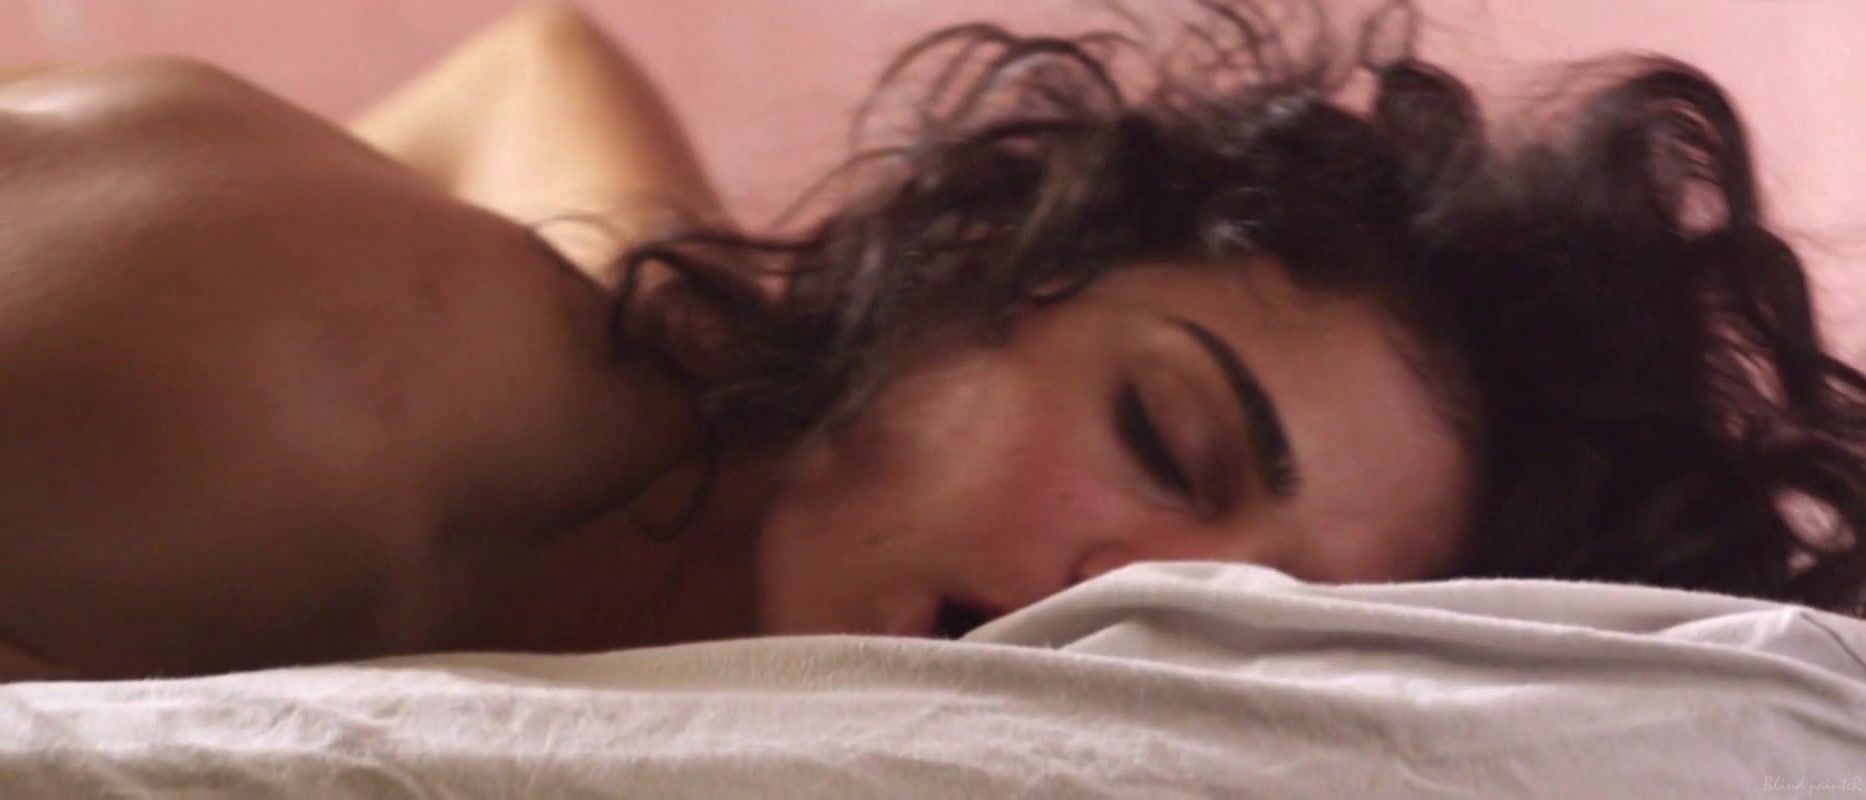 Gang Fabiola Buzim - Eu Queria Ser Arrebatada, Amordacada e, nas minhas costas, Tatuada (2015) Sucking Dicks - 1